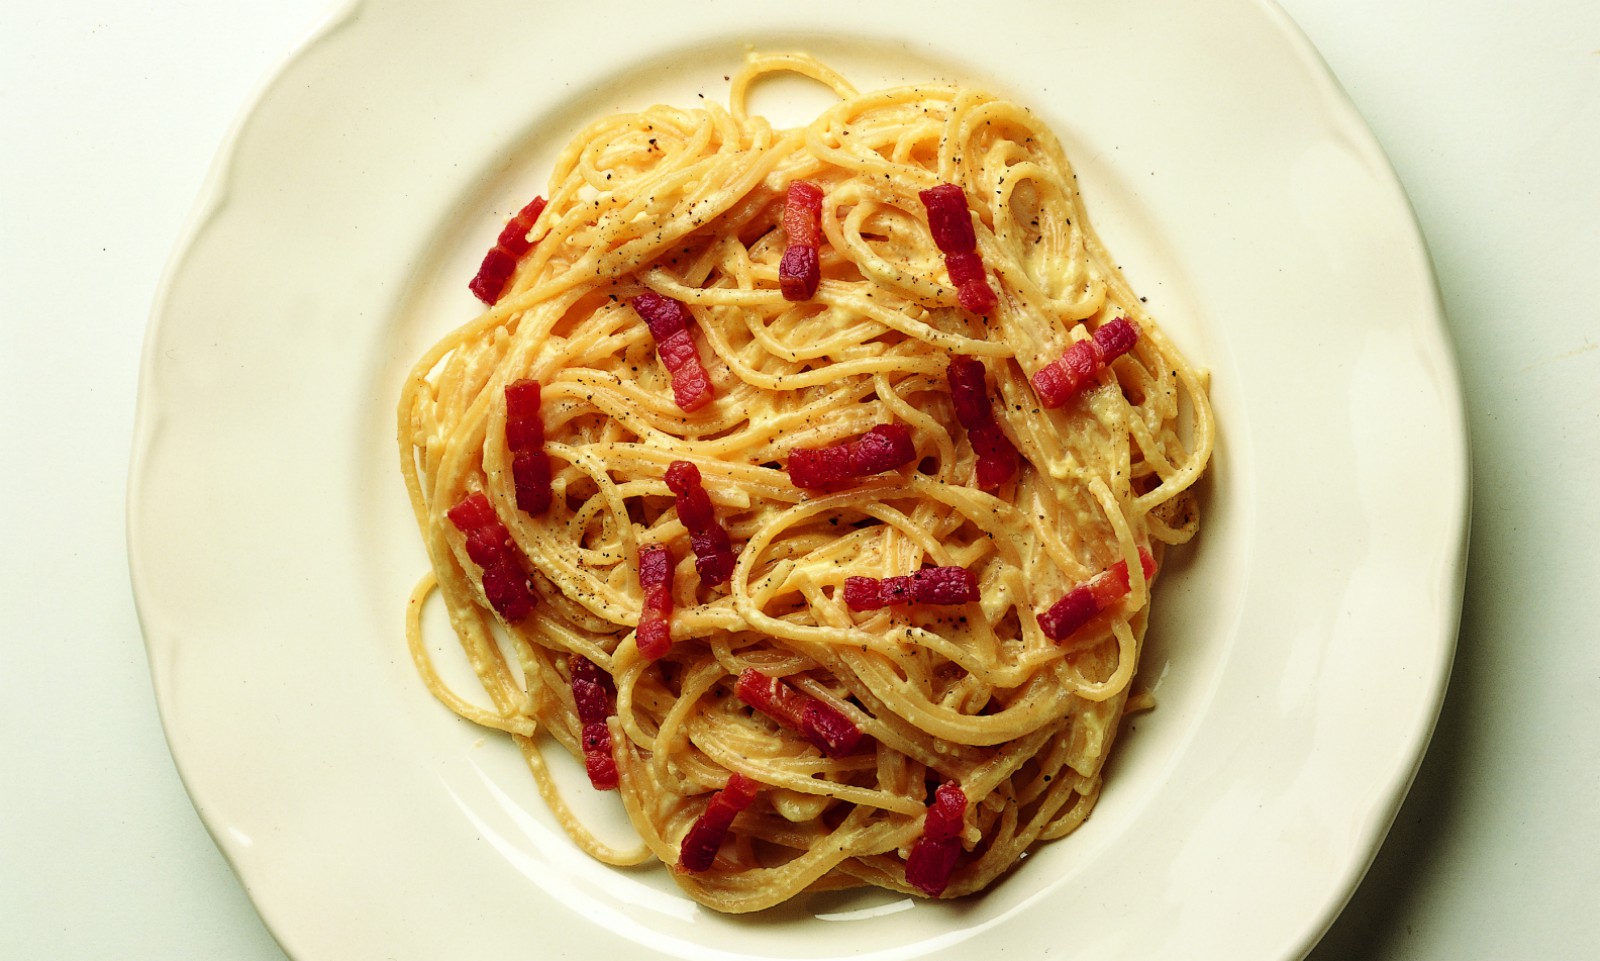 Spaghetti carbonara recipe with parmesan